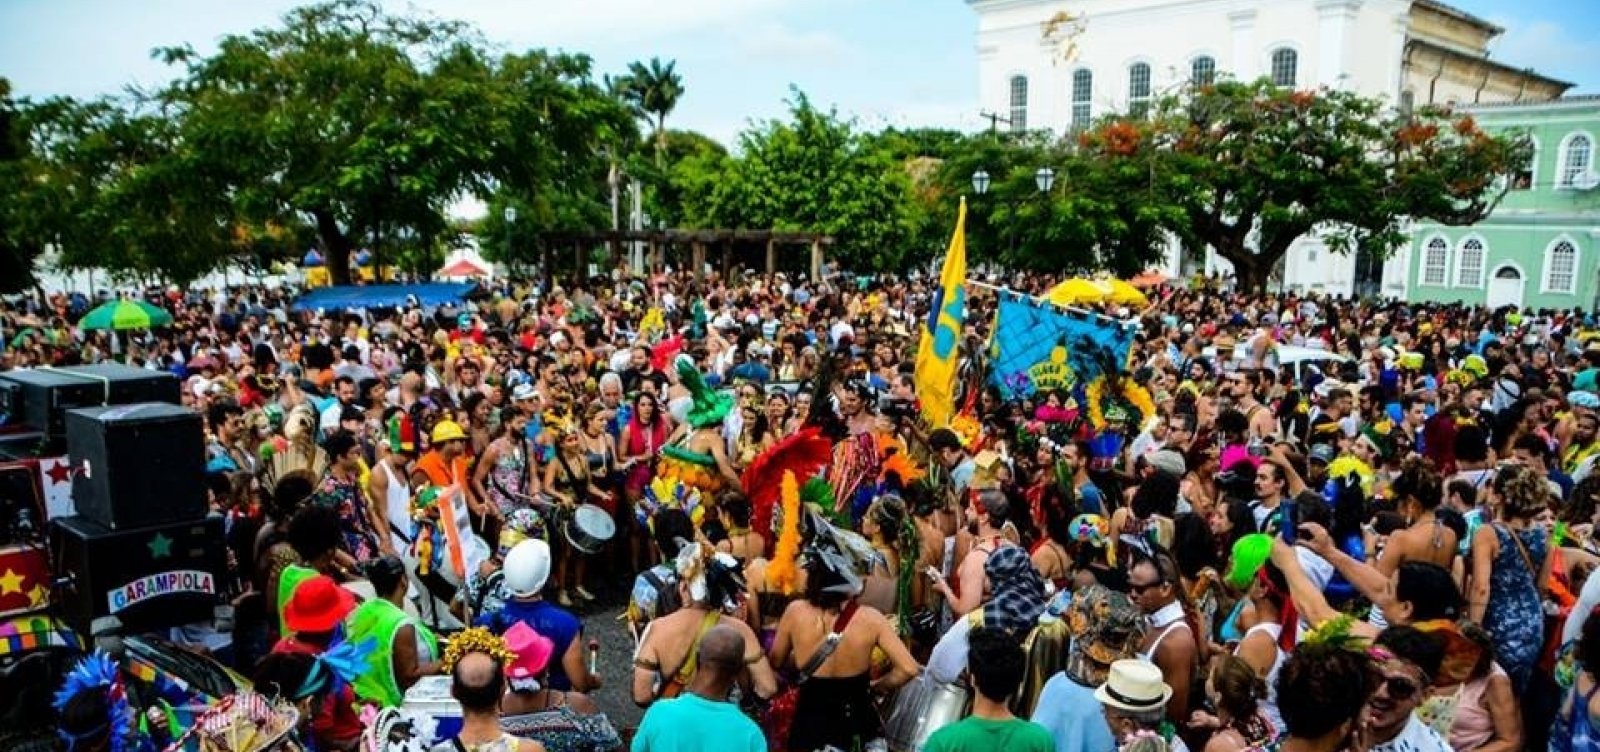 Bloco De Hoje a Oito emite nota pública sobre Carnaval no Santo Antônio: 'Estamos repensando'